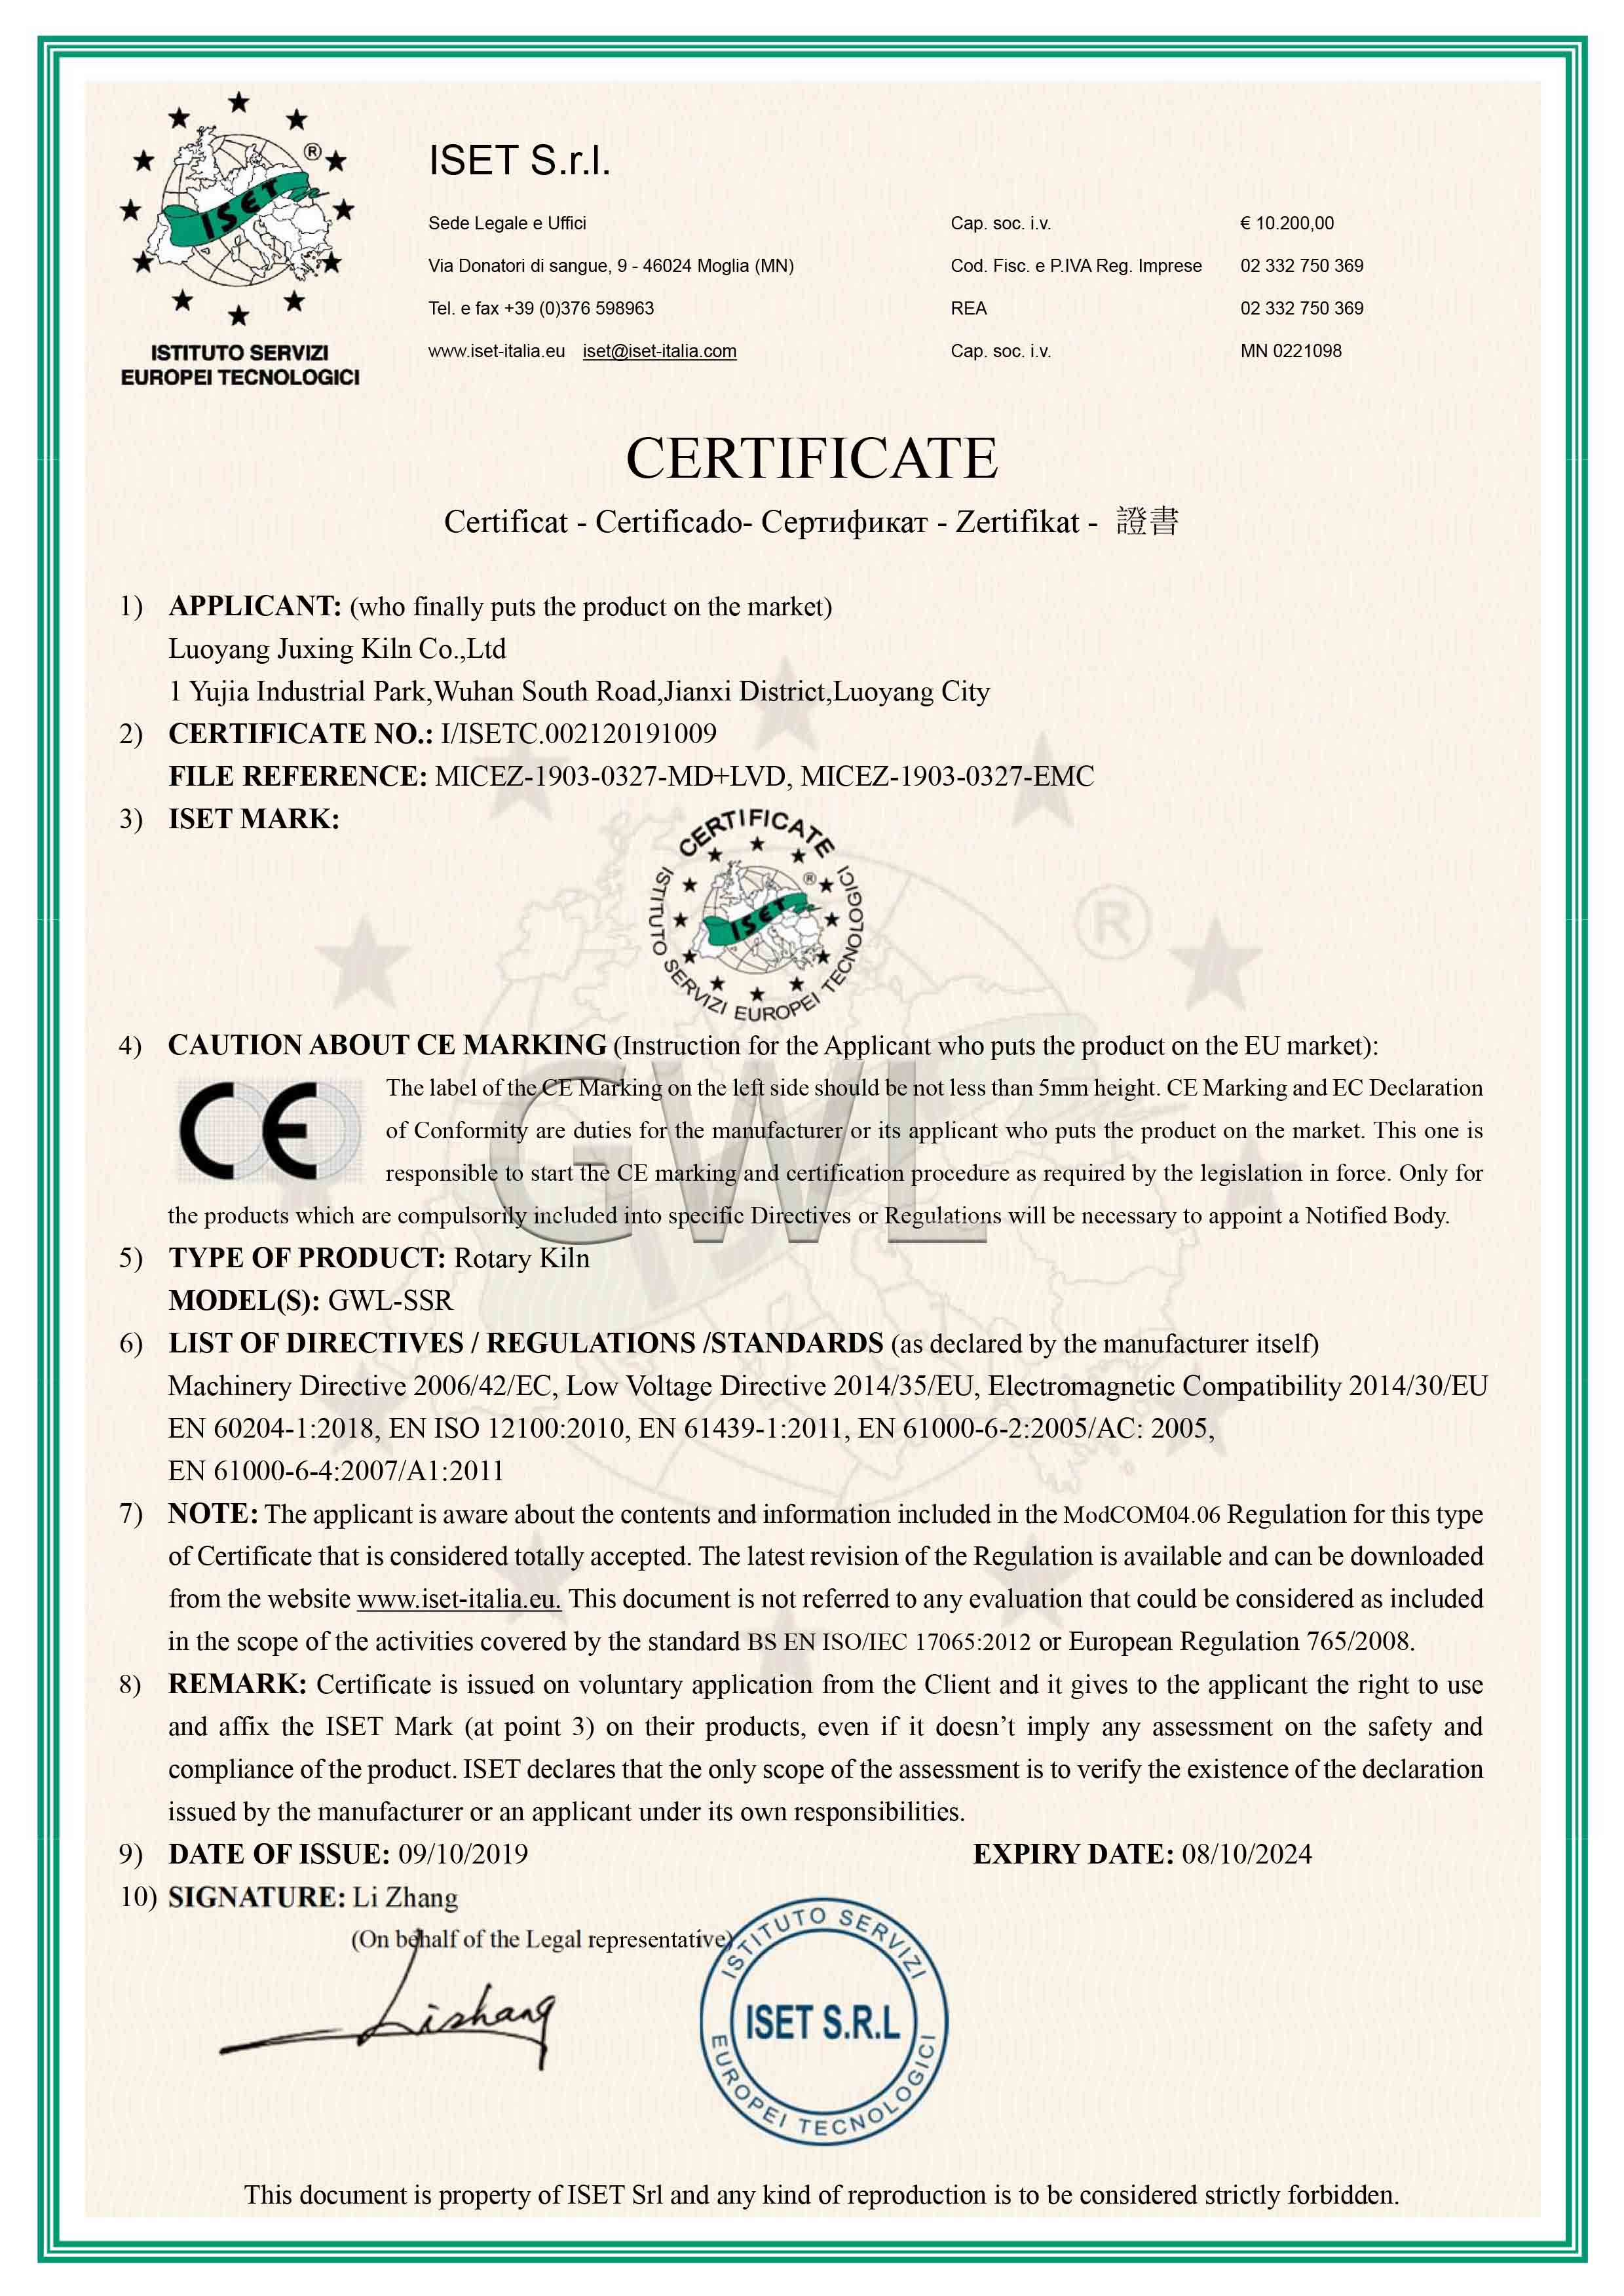 炬星GWL-SSR回转电窑炉欧盟认证CE证书